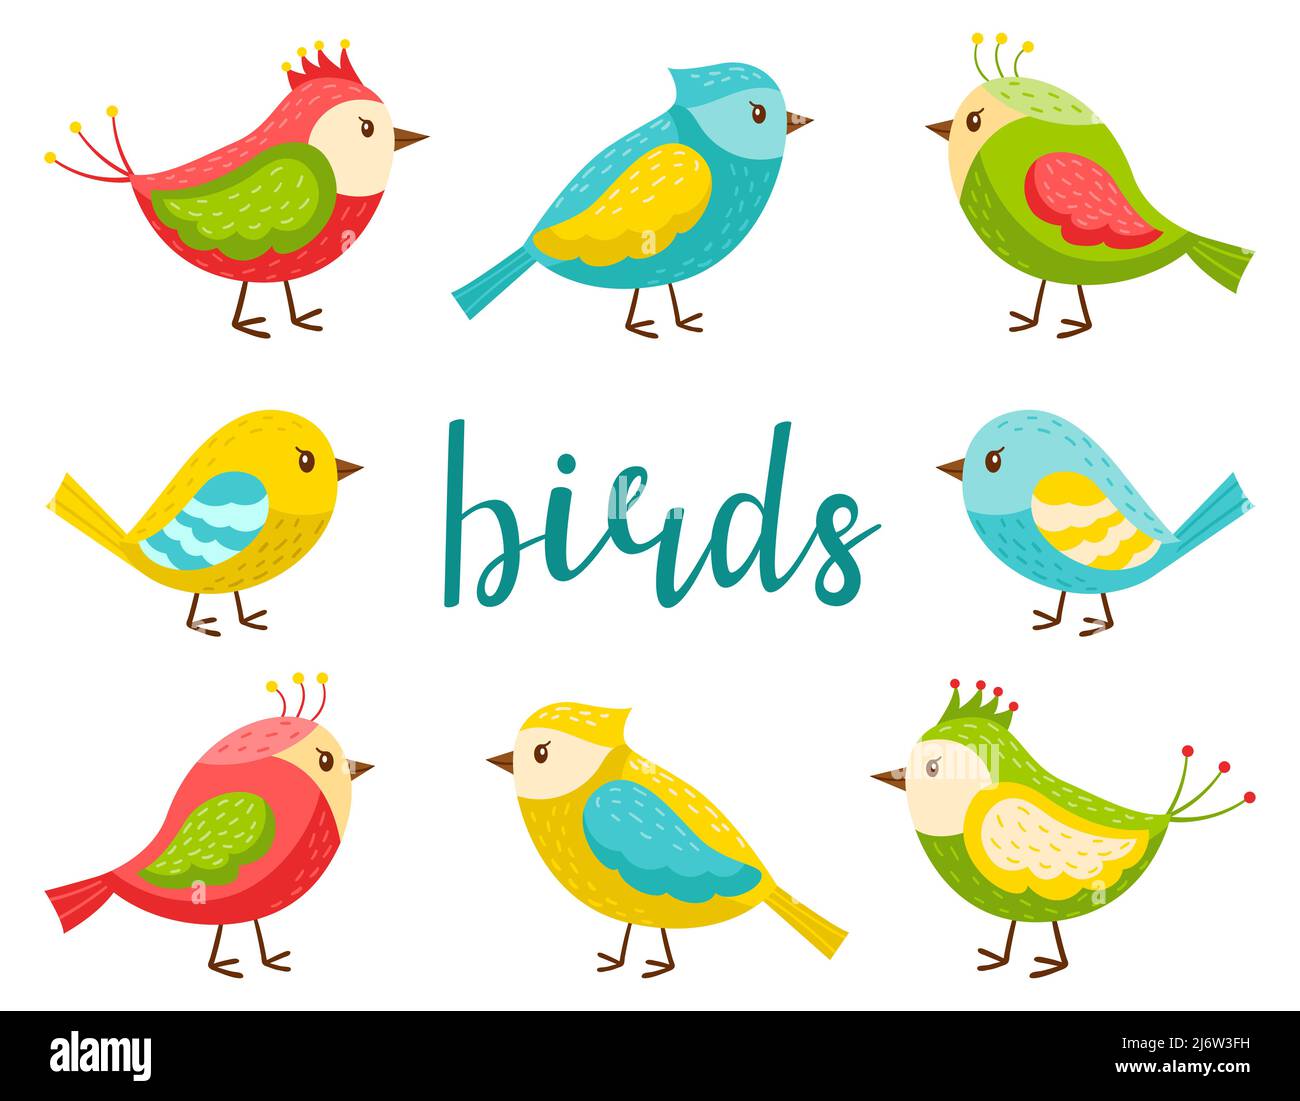 Ein Satz von hellen niedlichen Vögeln. Eine Kollektion von Cartoon-Frühlingsvögeln in einem flachen Stil. Designelemente für Frühling, Sommer und Kinder Themen. Color vecto Stock Vektor